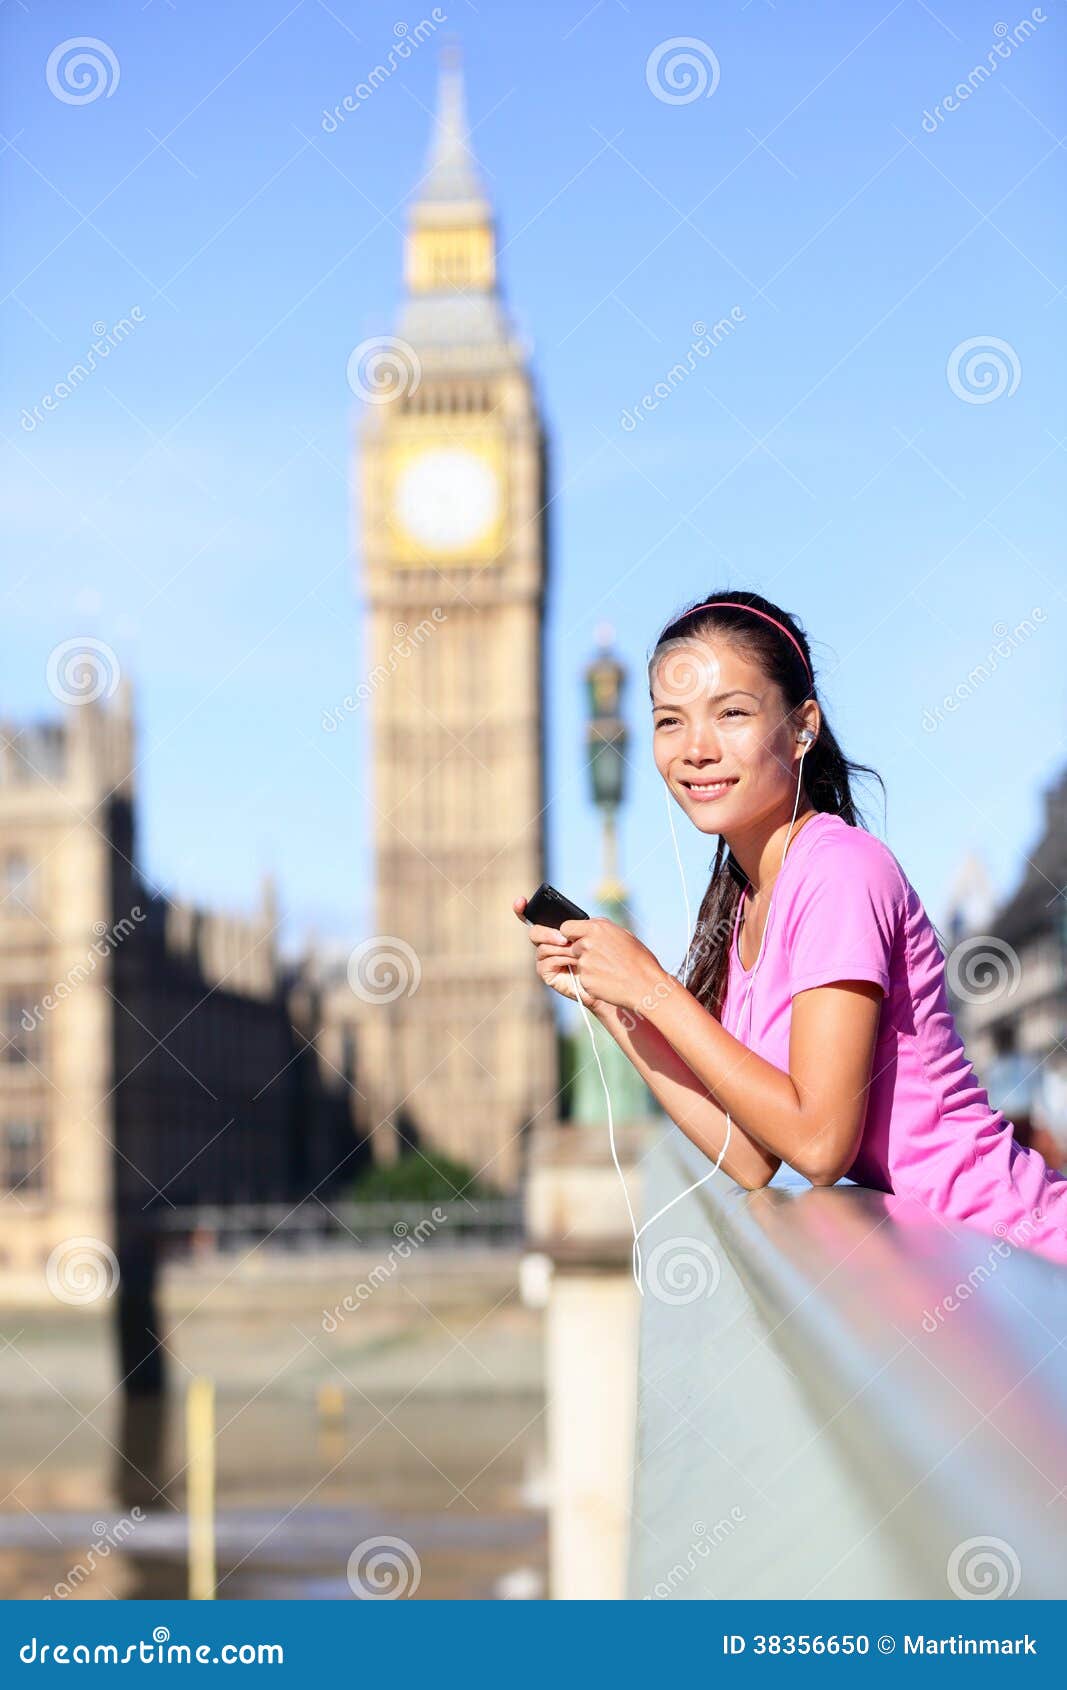 Женщина лондон. Женщина в Лондоне. Красивые женщины Лондона. Лондона на женской руке. Девушка в розовом платье на фоне Биг Бена.